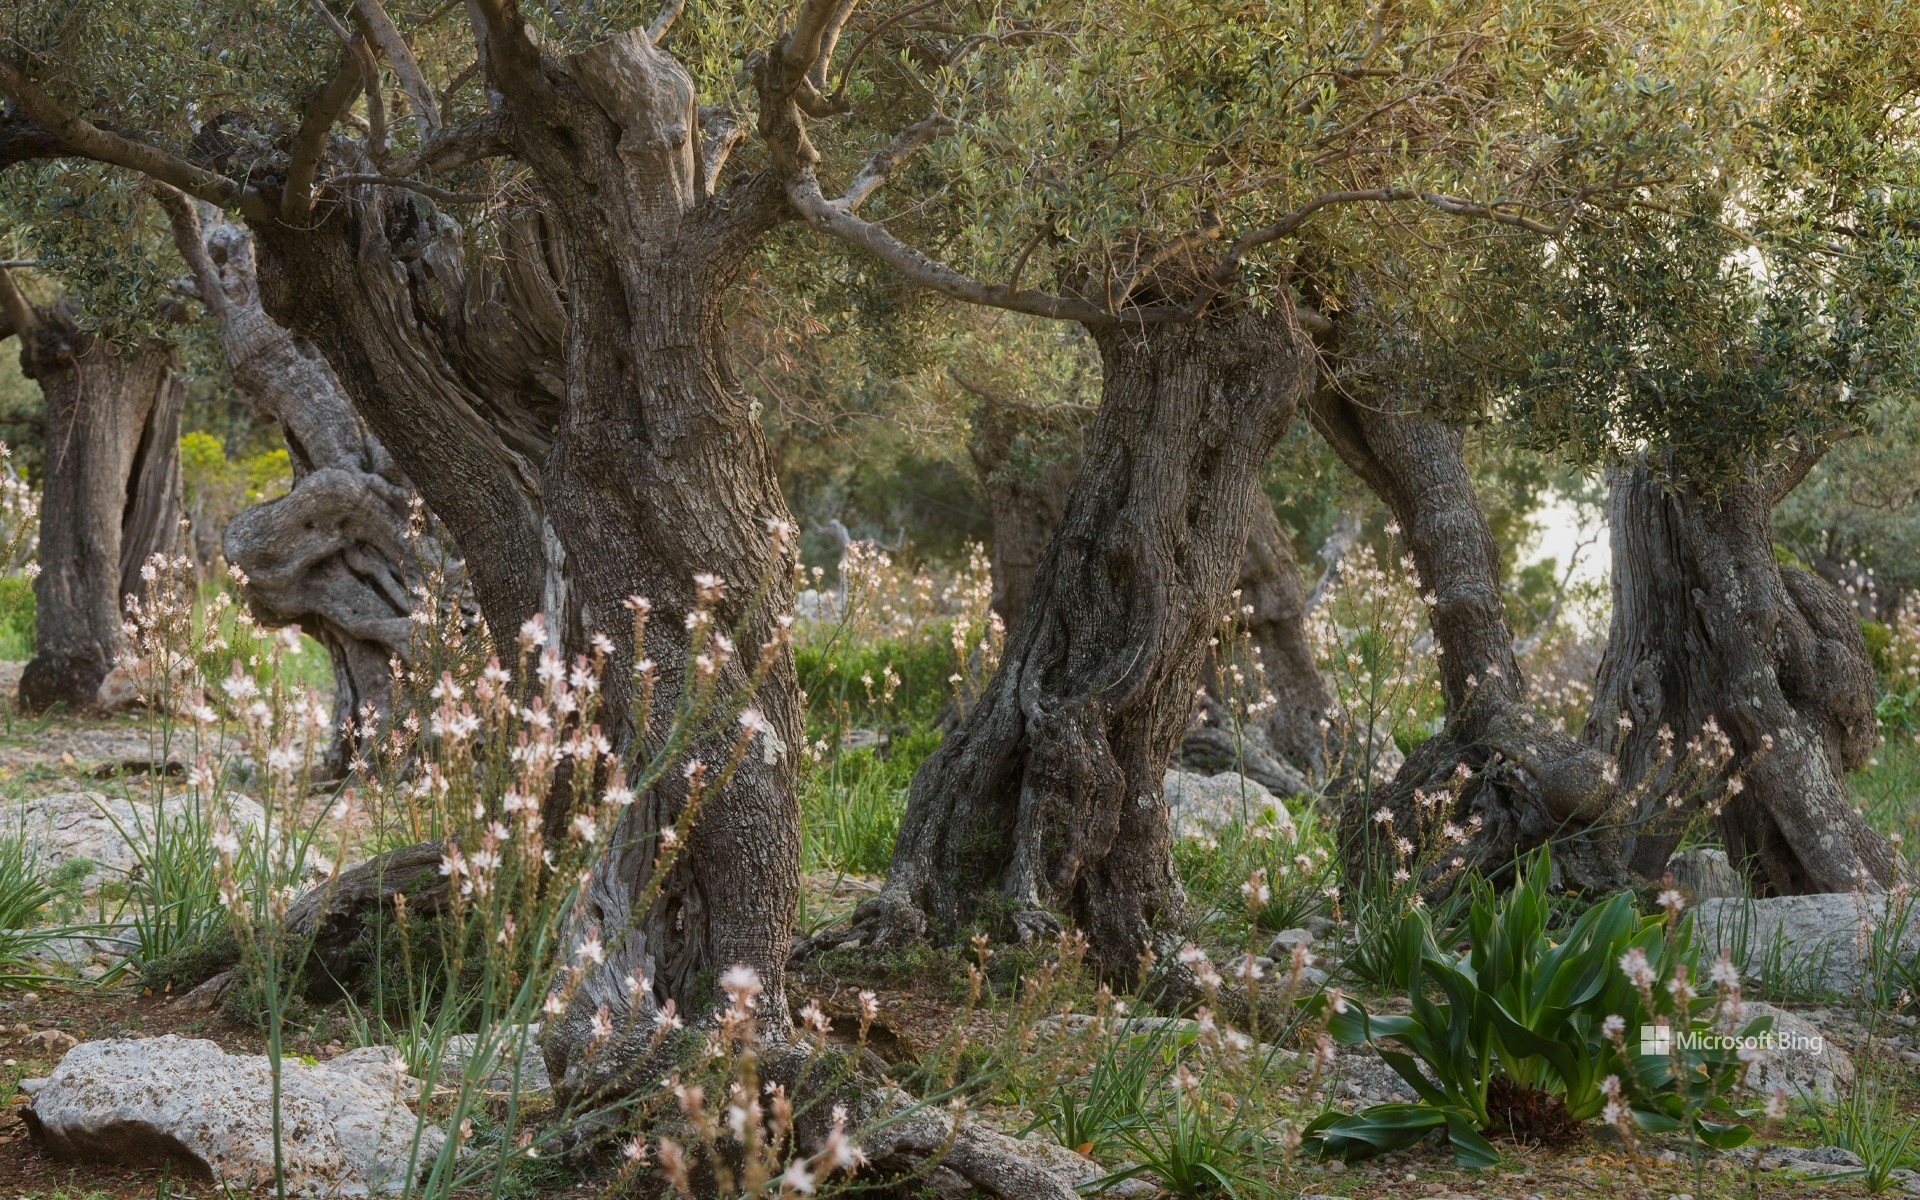 Centennial olive trees in Deyá, Balearic Islands, Spain